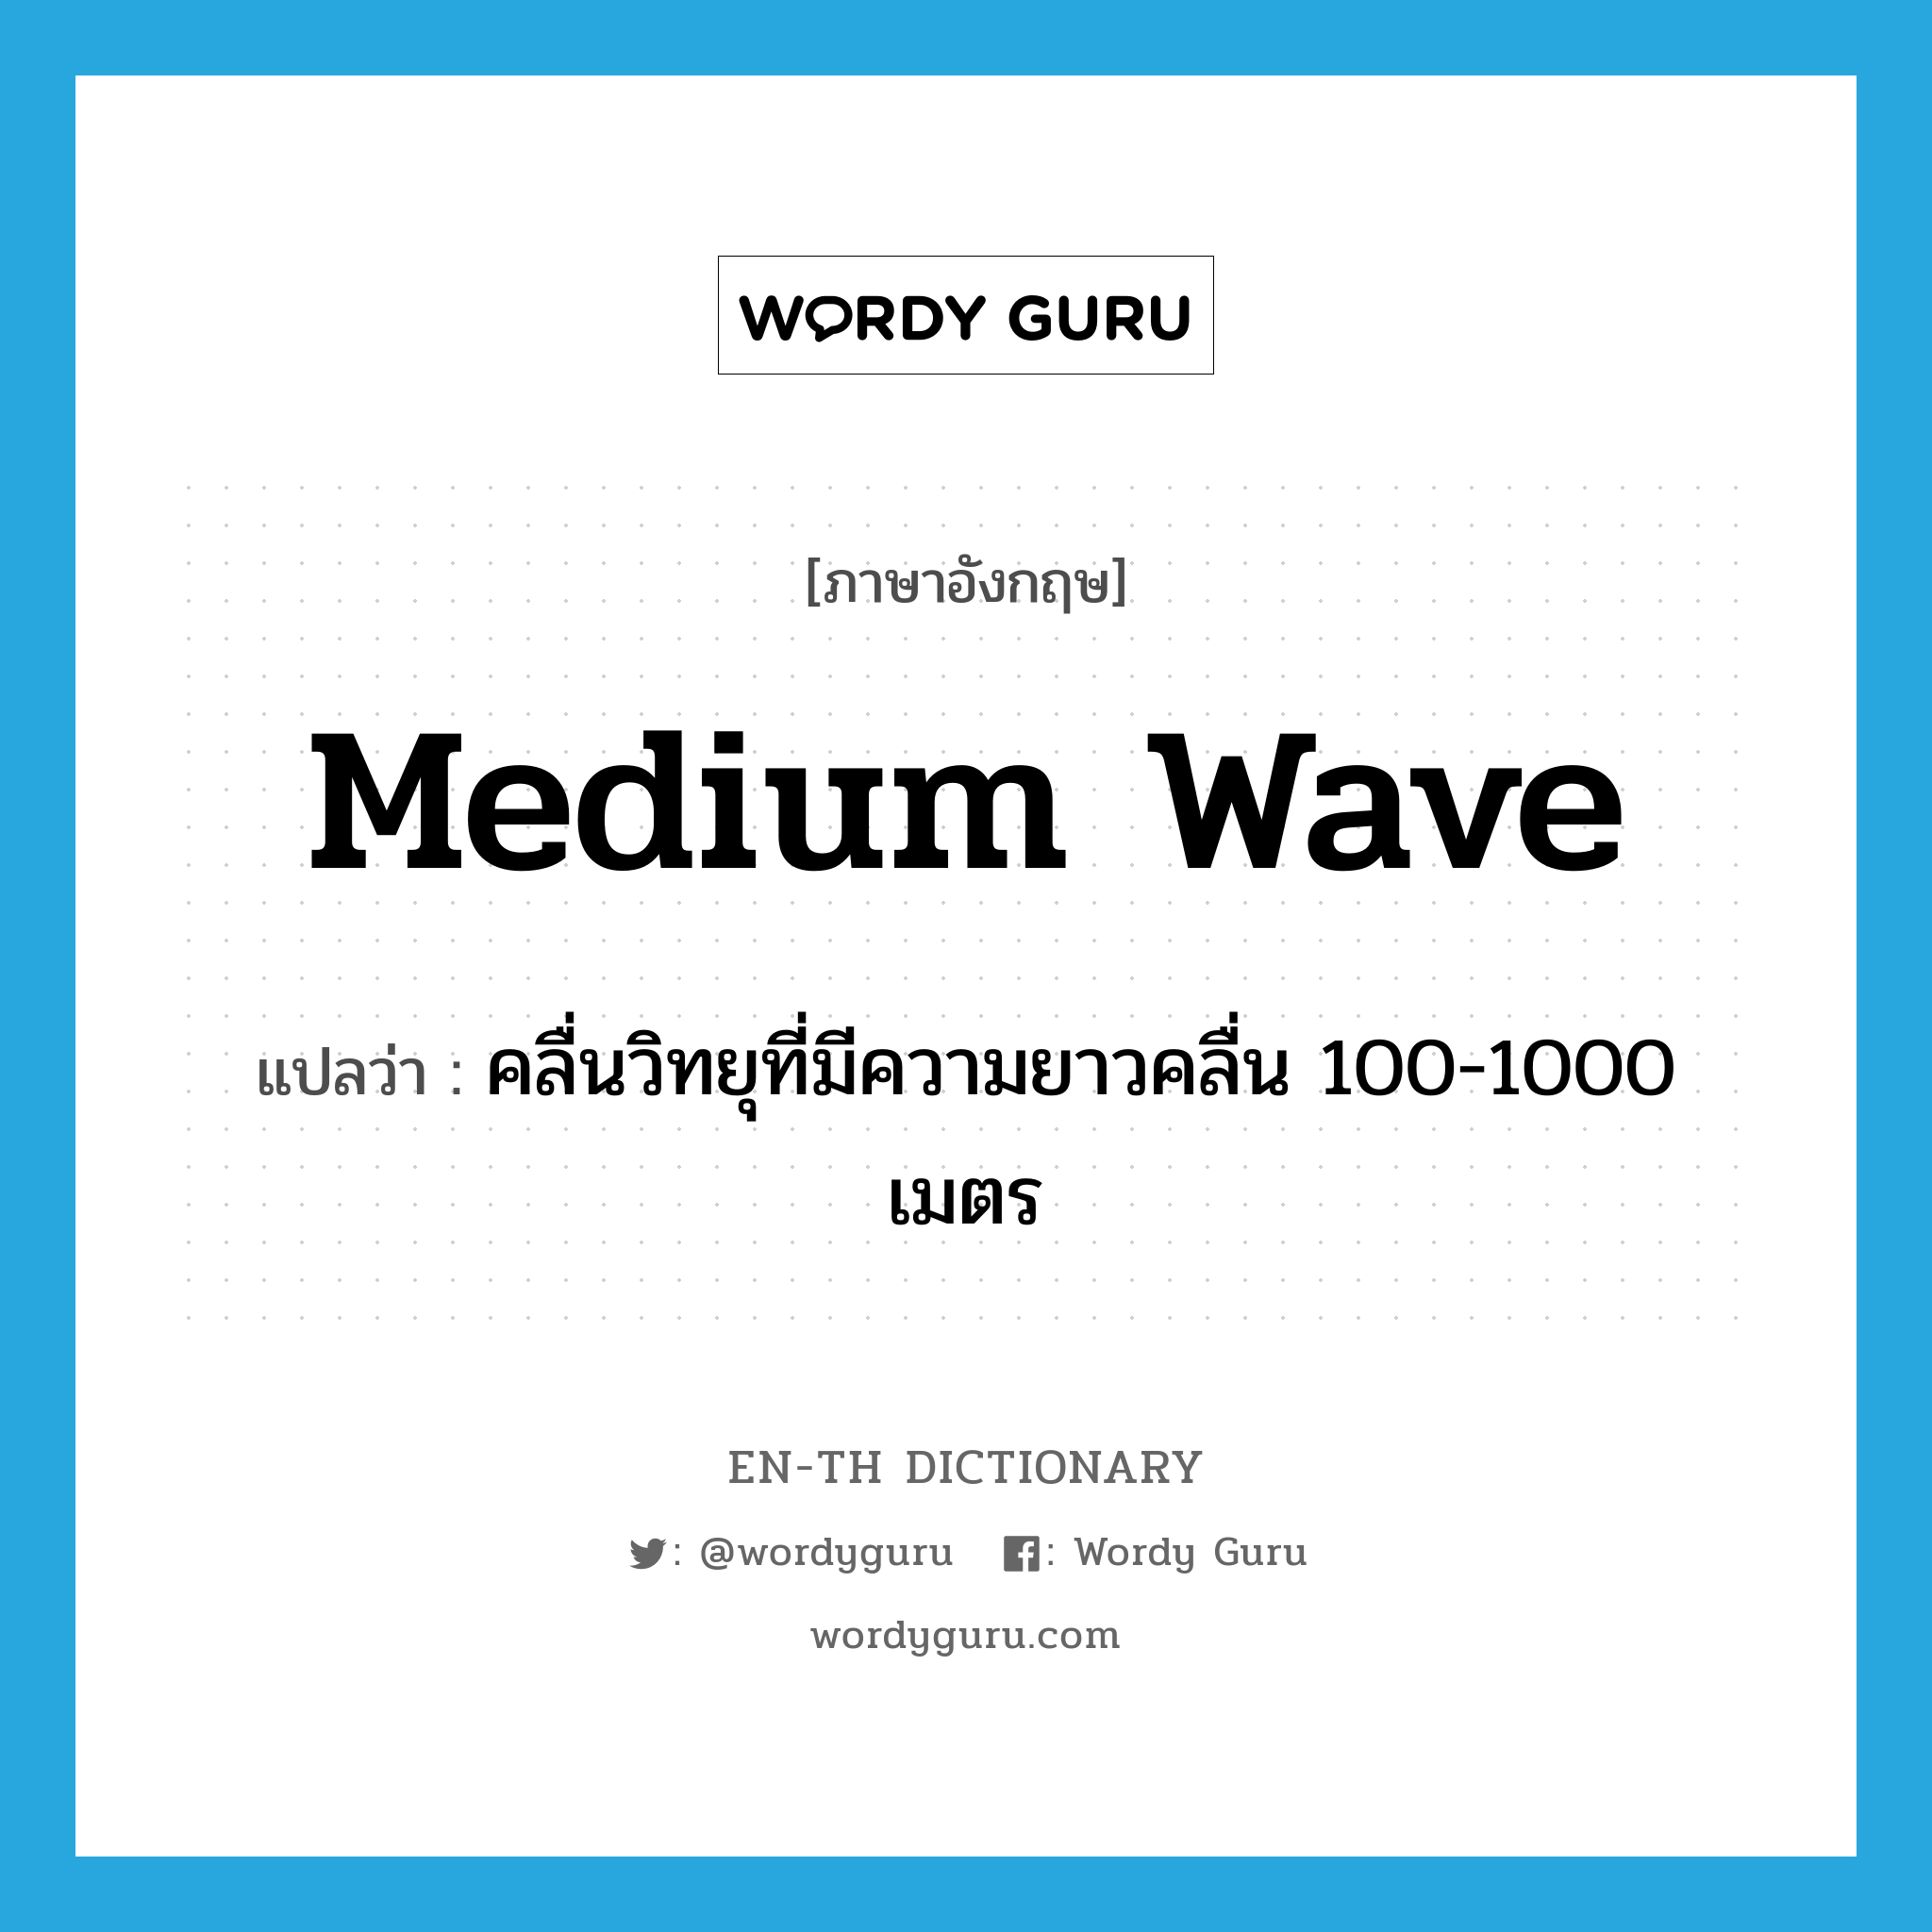 คลื่นวิทยุที่มีความยาวคลื่น 100-1000 เมตร ภาษาอังกฤษ?, คำศัพท์ภาษาอังกฤษ คลื่นวิทยุที่มีความยาวคลื่น 100-1000 เมตร แปลว่า medium wave ประเภท N หมวด N